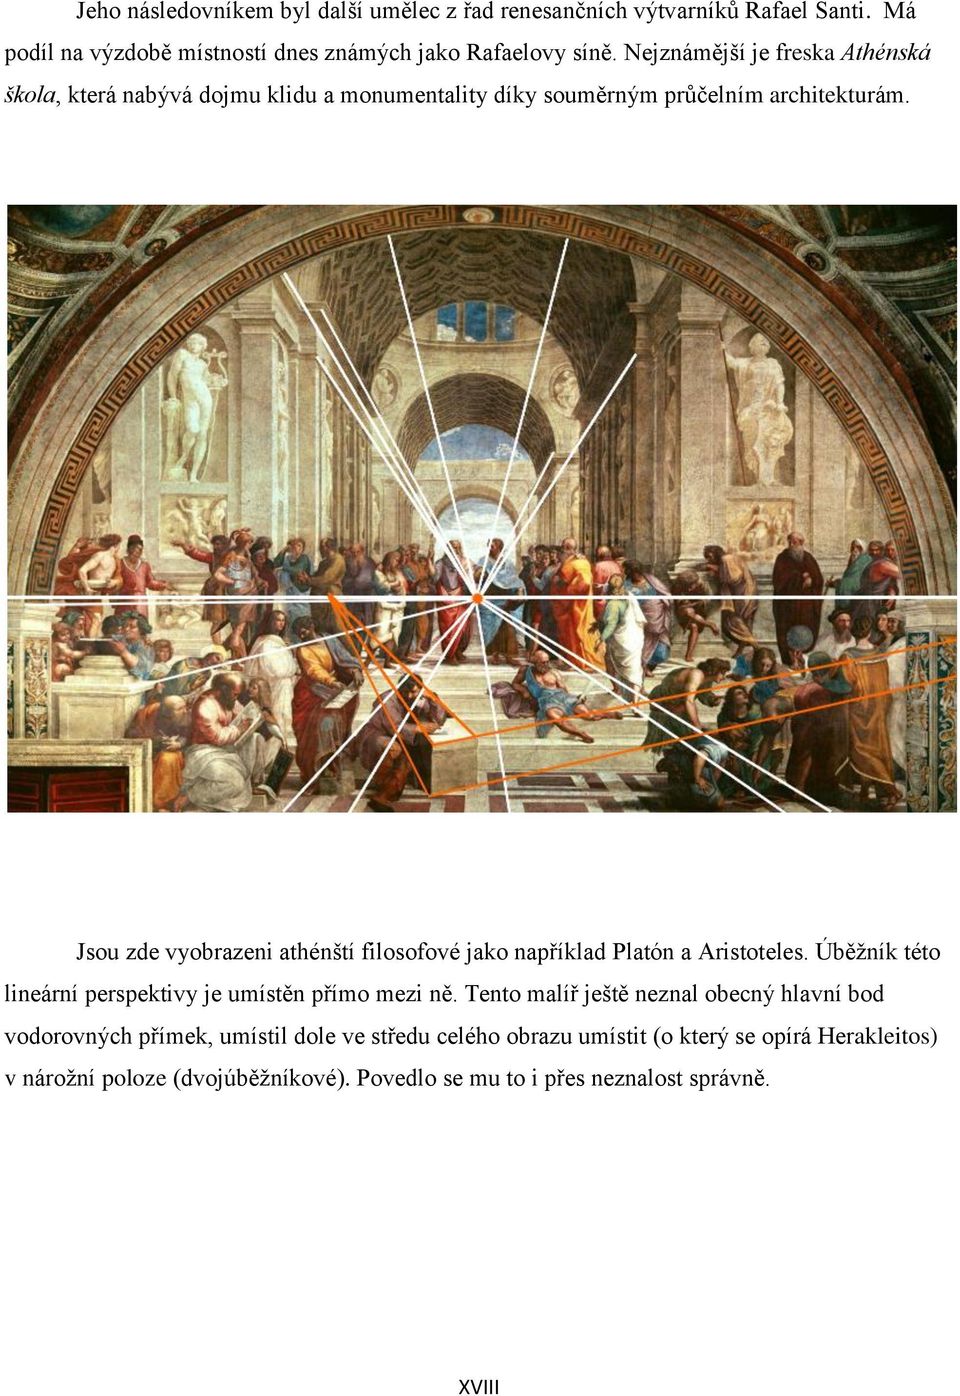 Jsou zde vyobrazeni athénští filosofové jako například Platón a Aristoteles. Úběžník této lineární perspektivy je umístěn přímo mezi ně.